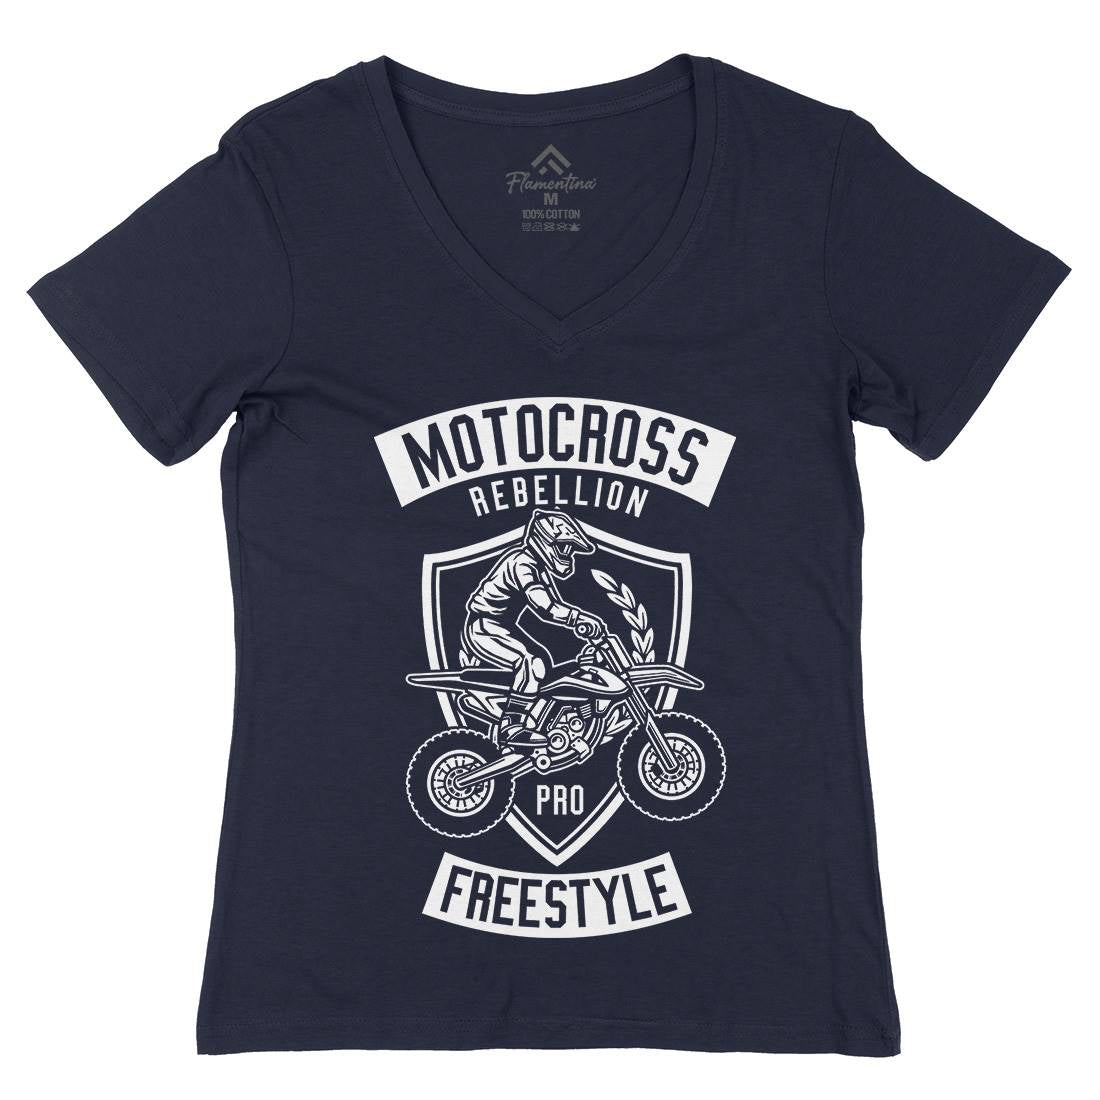 Motocross Rebellion Womens Organic V-Neck T-Shirt Motorcycles B578